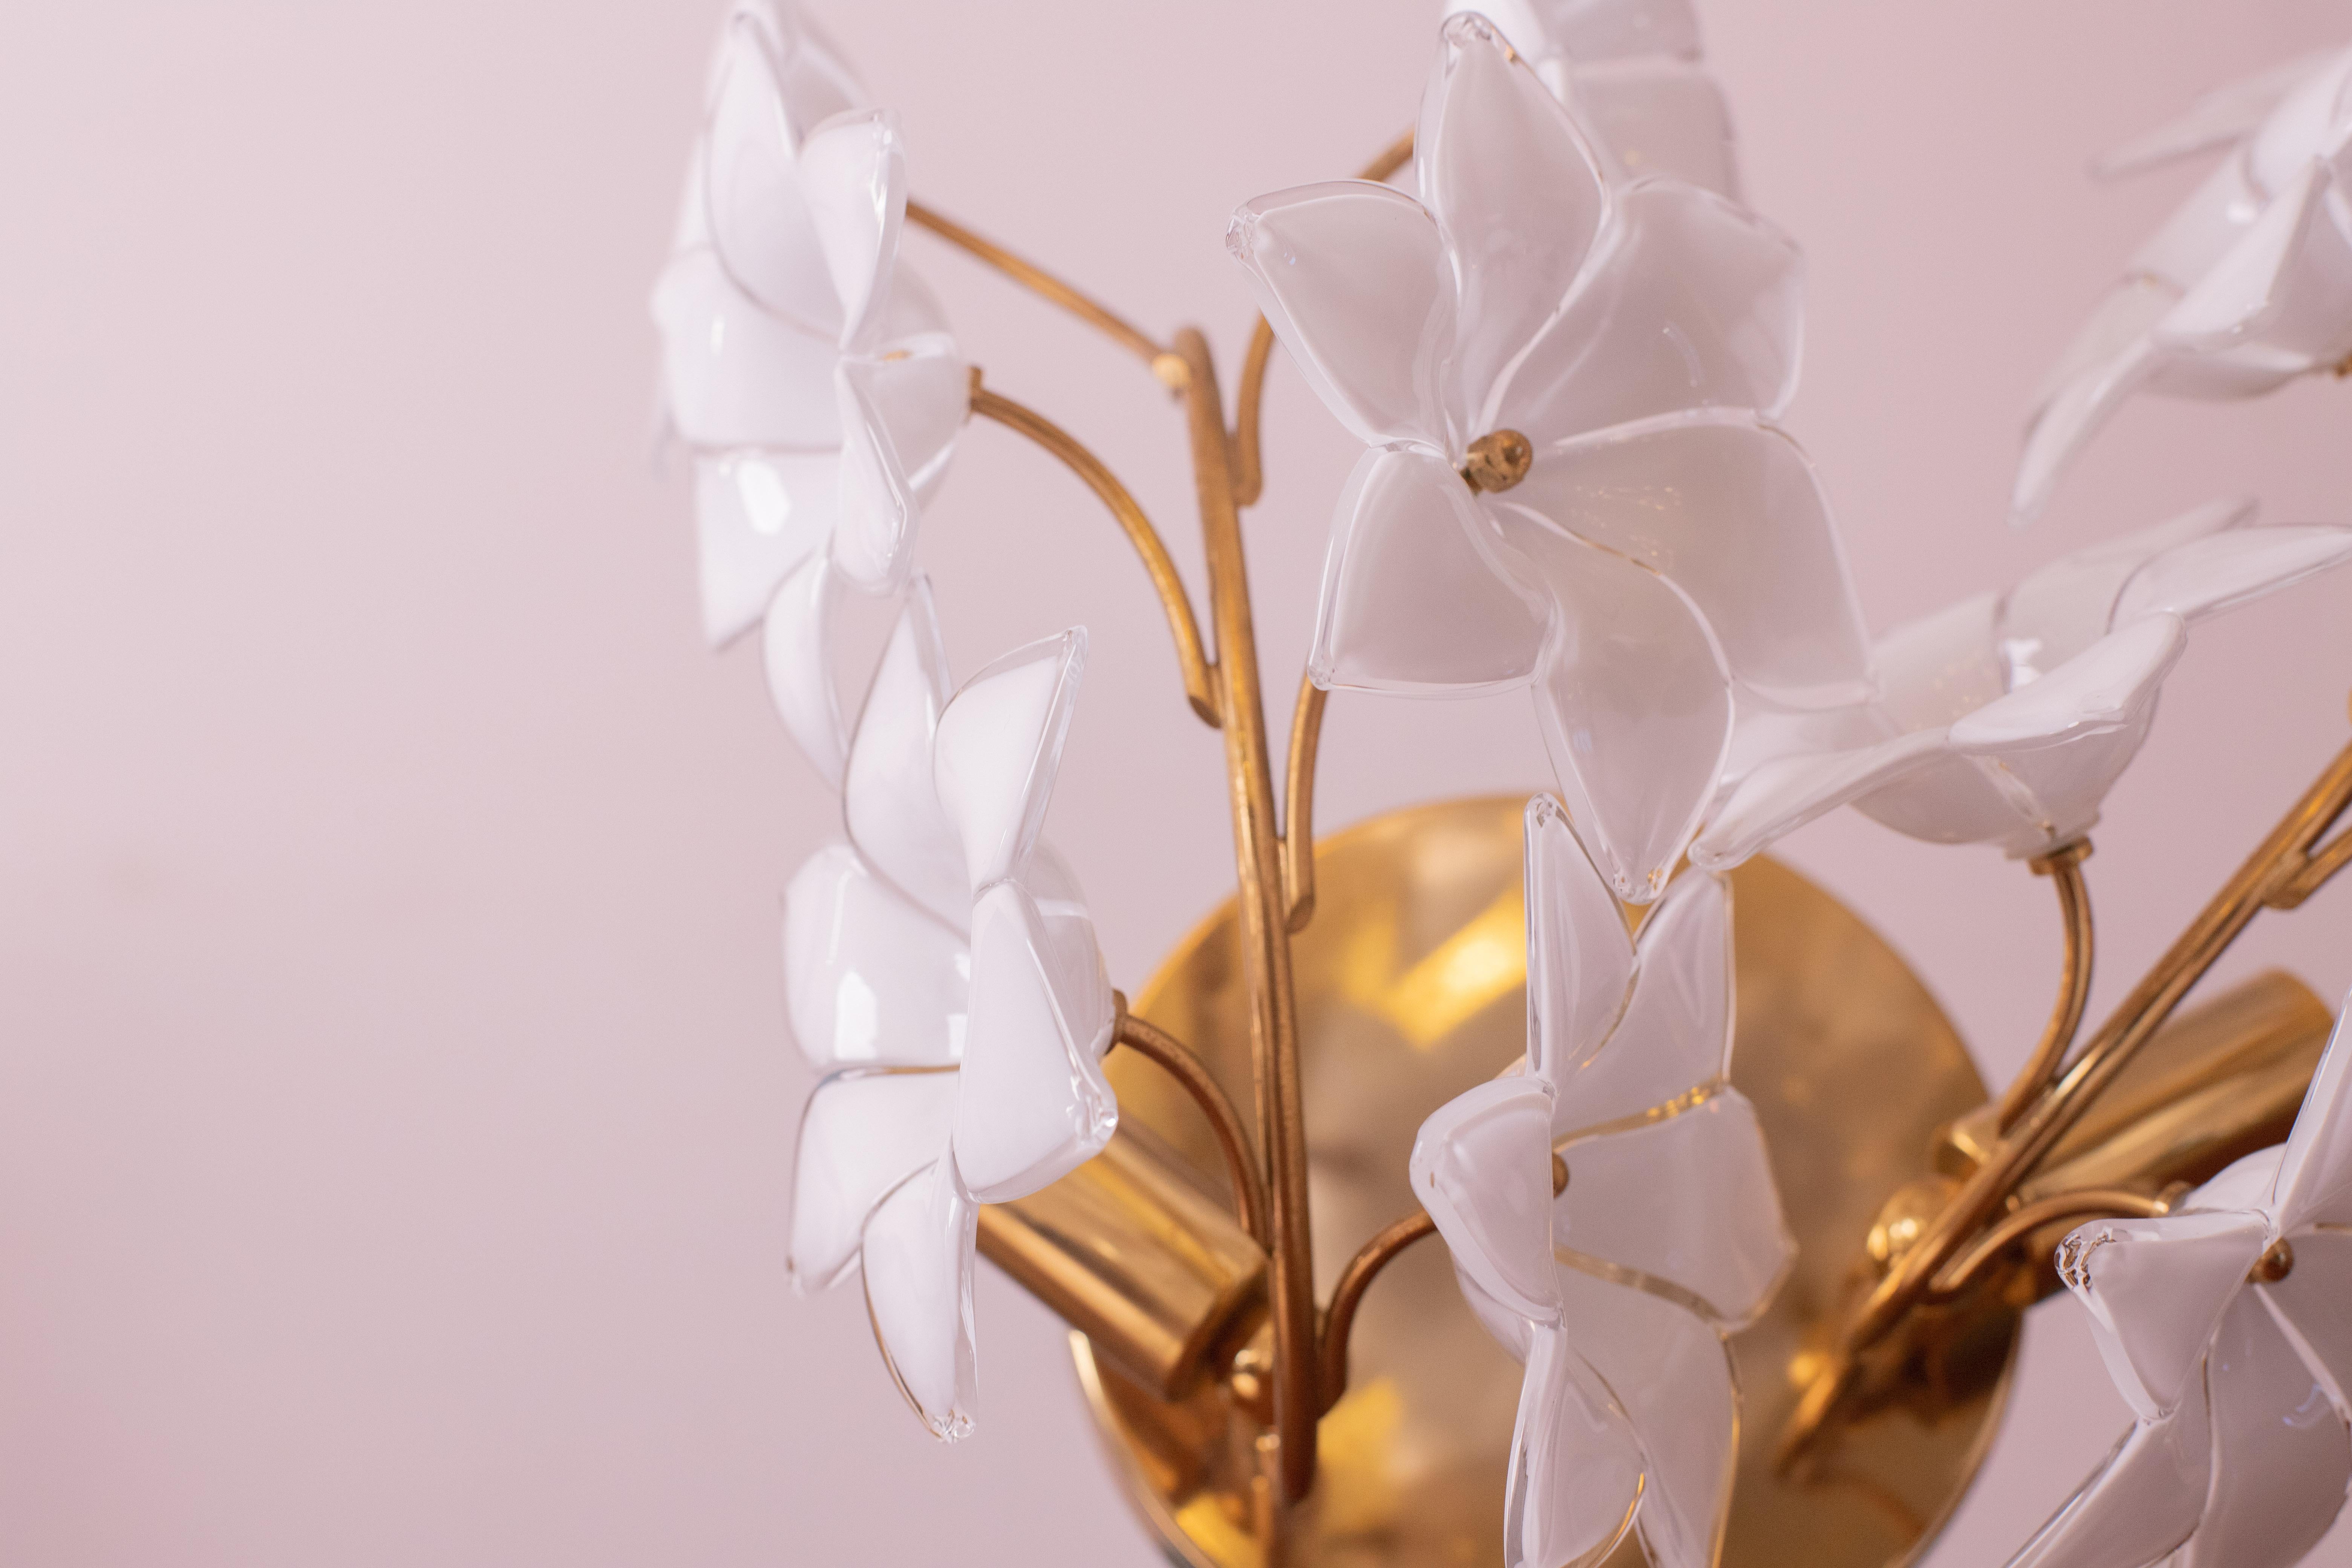 Merveilleuse applique murale de Murano avec des fleurs blanches.

L'applique a un cadre de bain doré décoré de fleurs blanches de Murano, en excellent état cosmétique.

Le luminaire permet de monter deux lampes e14, norme